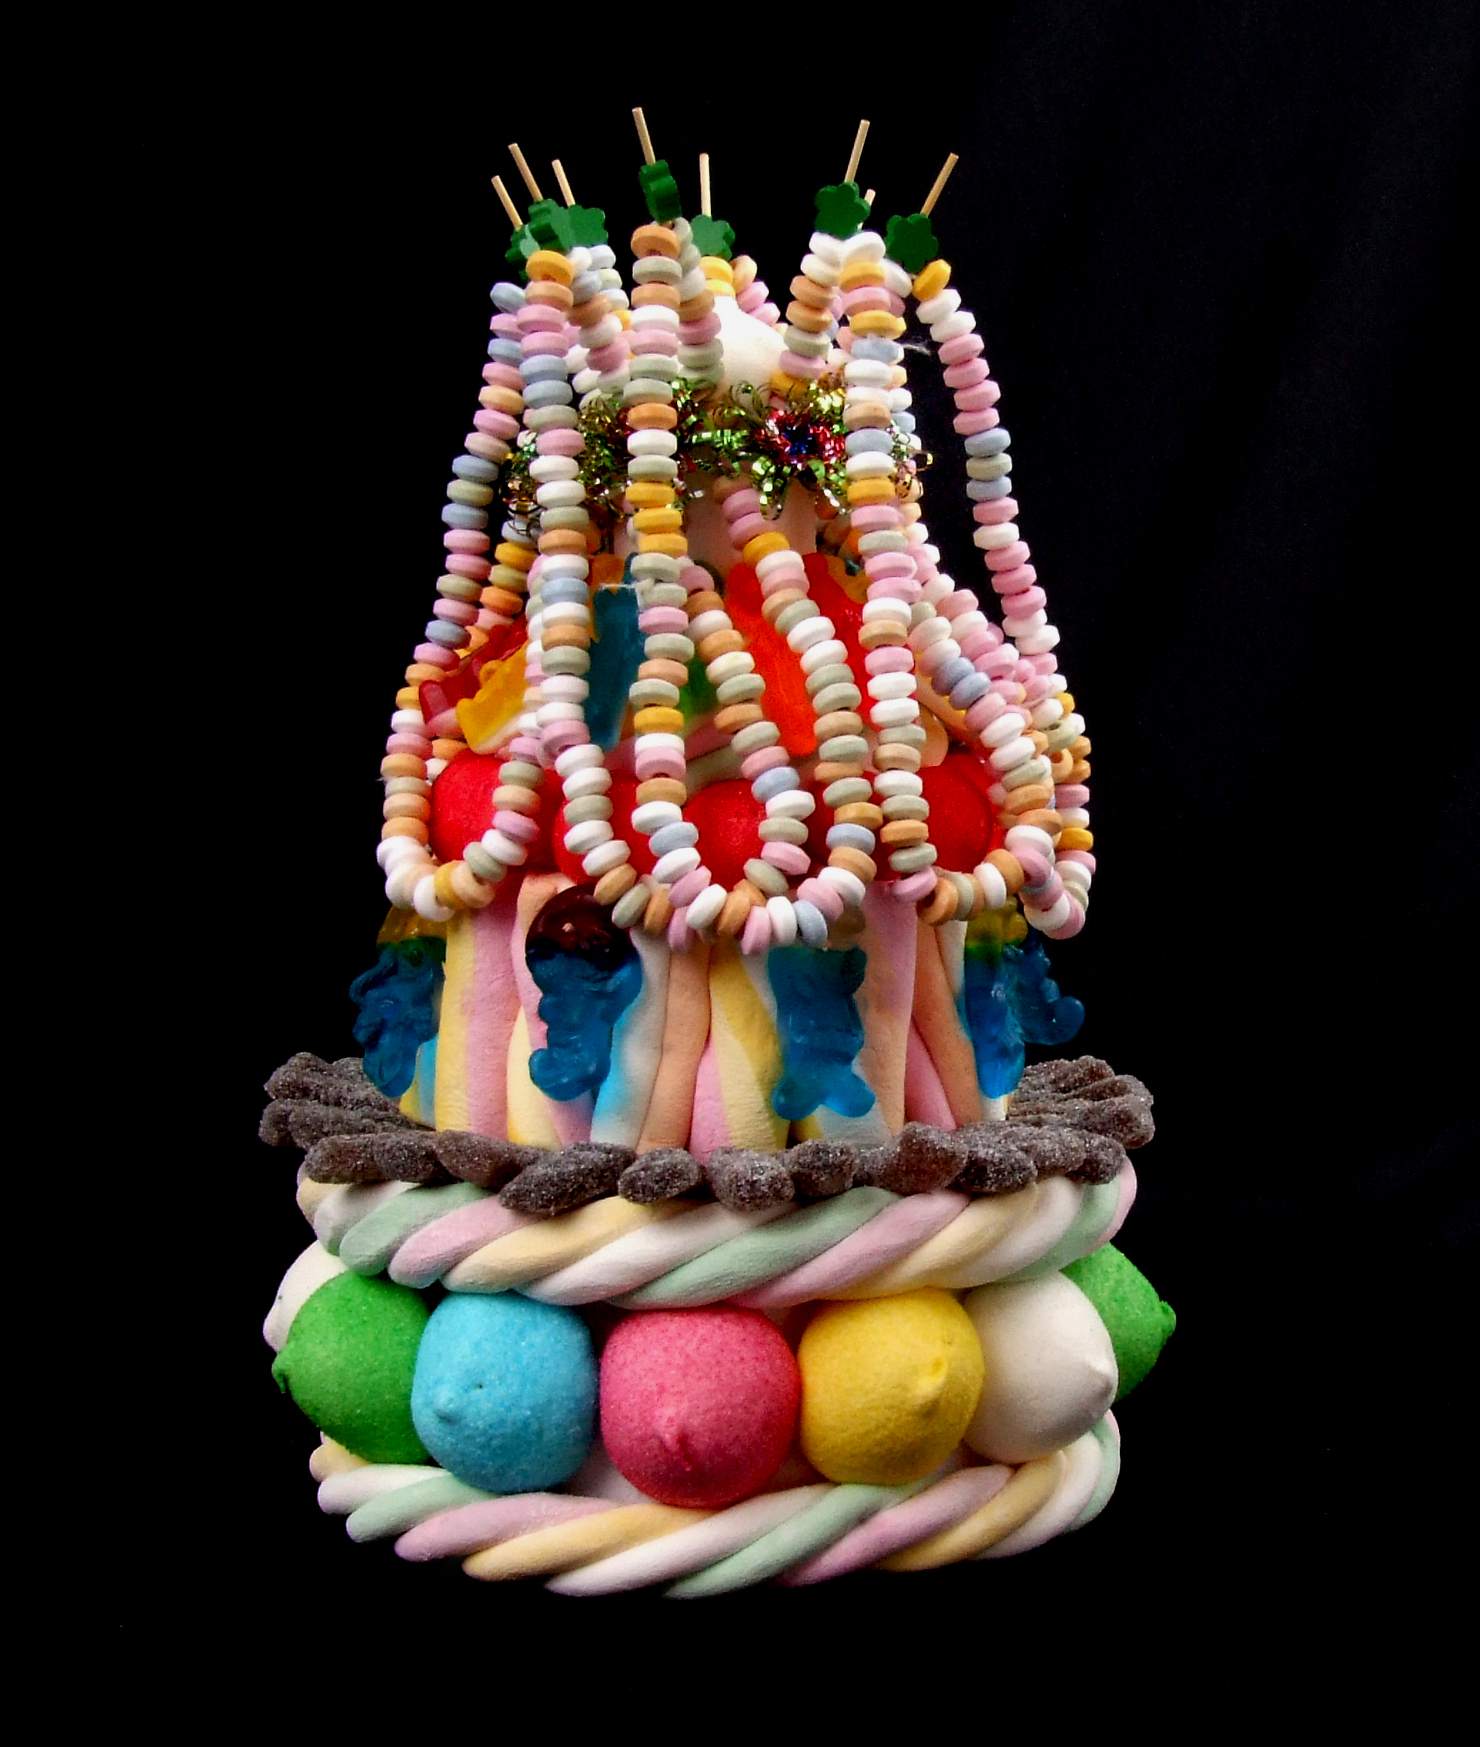 Collier De Bonbons, Cadre De Bonbons Avec Fil De Sucre Filé, Cadre Ba  Pastel, Décoration, Art De Beauté, Vue De Dessus